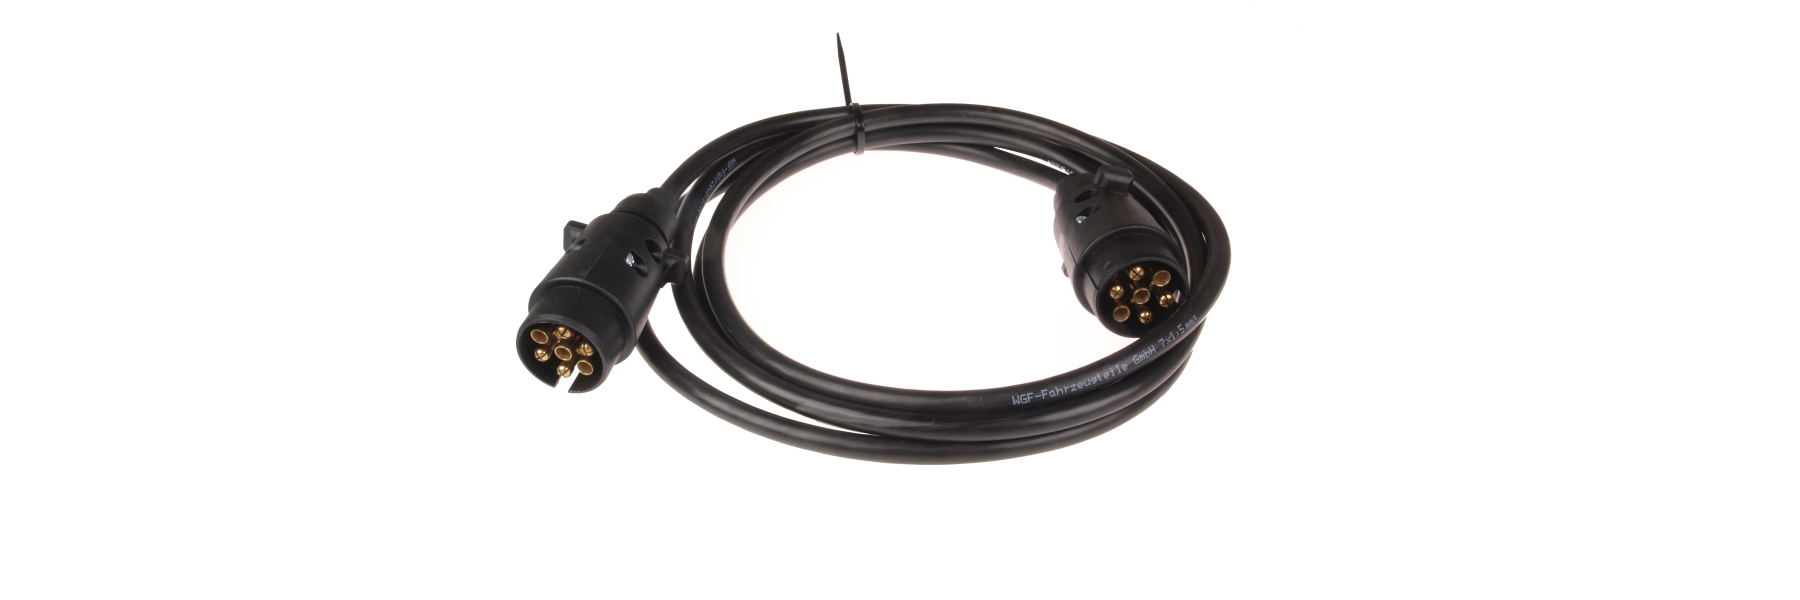 Kfz-Kabel und Fahrzeugleitungen für professionelle Anwender